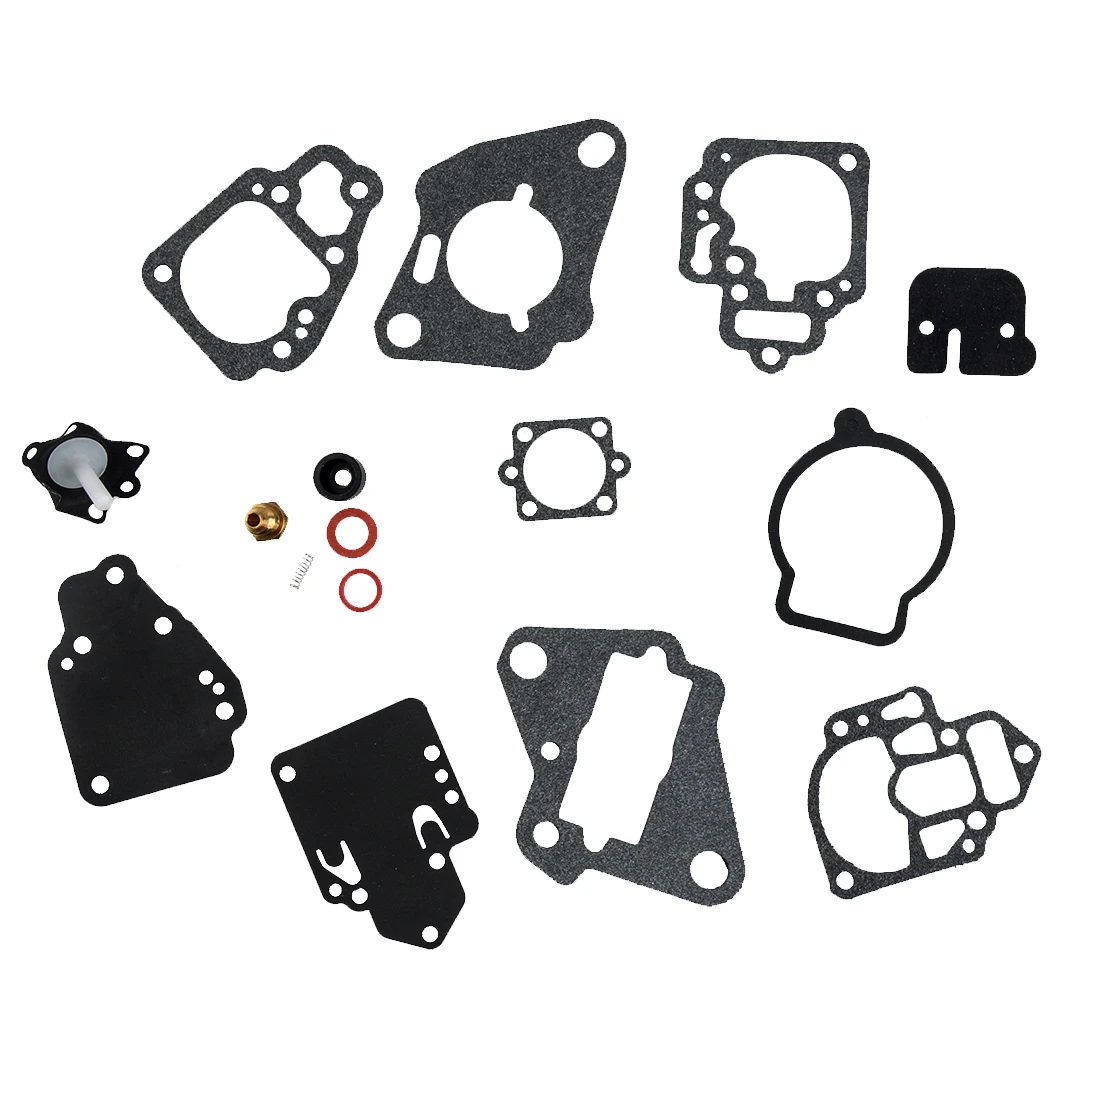 

Carburetor Repair Rebuild Kit Fit for Mercury Mariner Many 6 8 9.9 10 15 20 & 25 HP 1395-9761 1395-811357 1395-9645 1395-9377